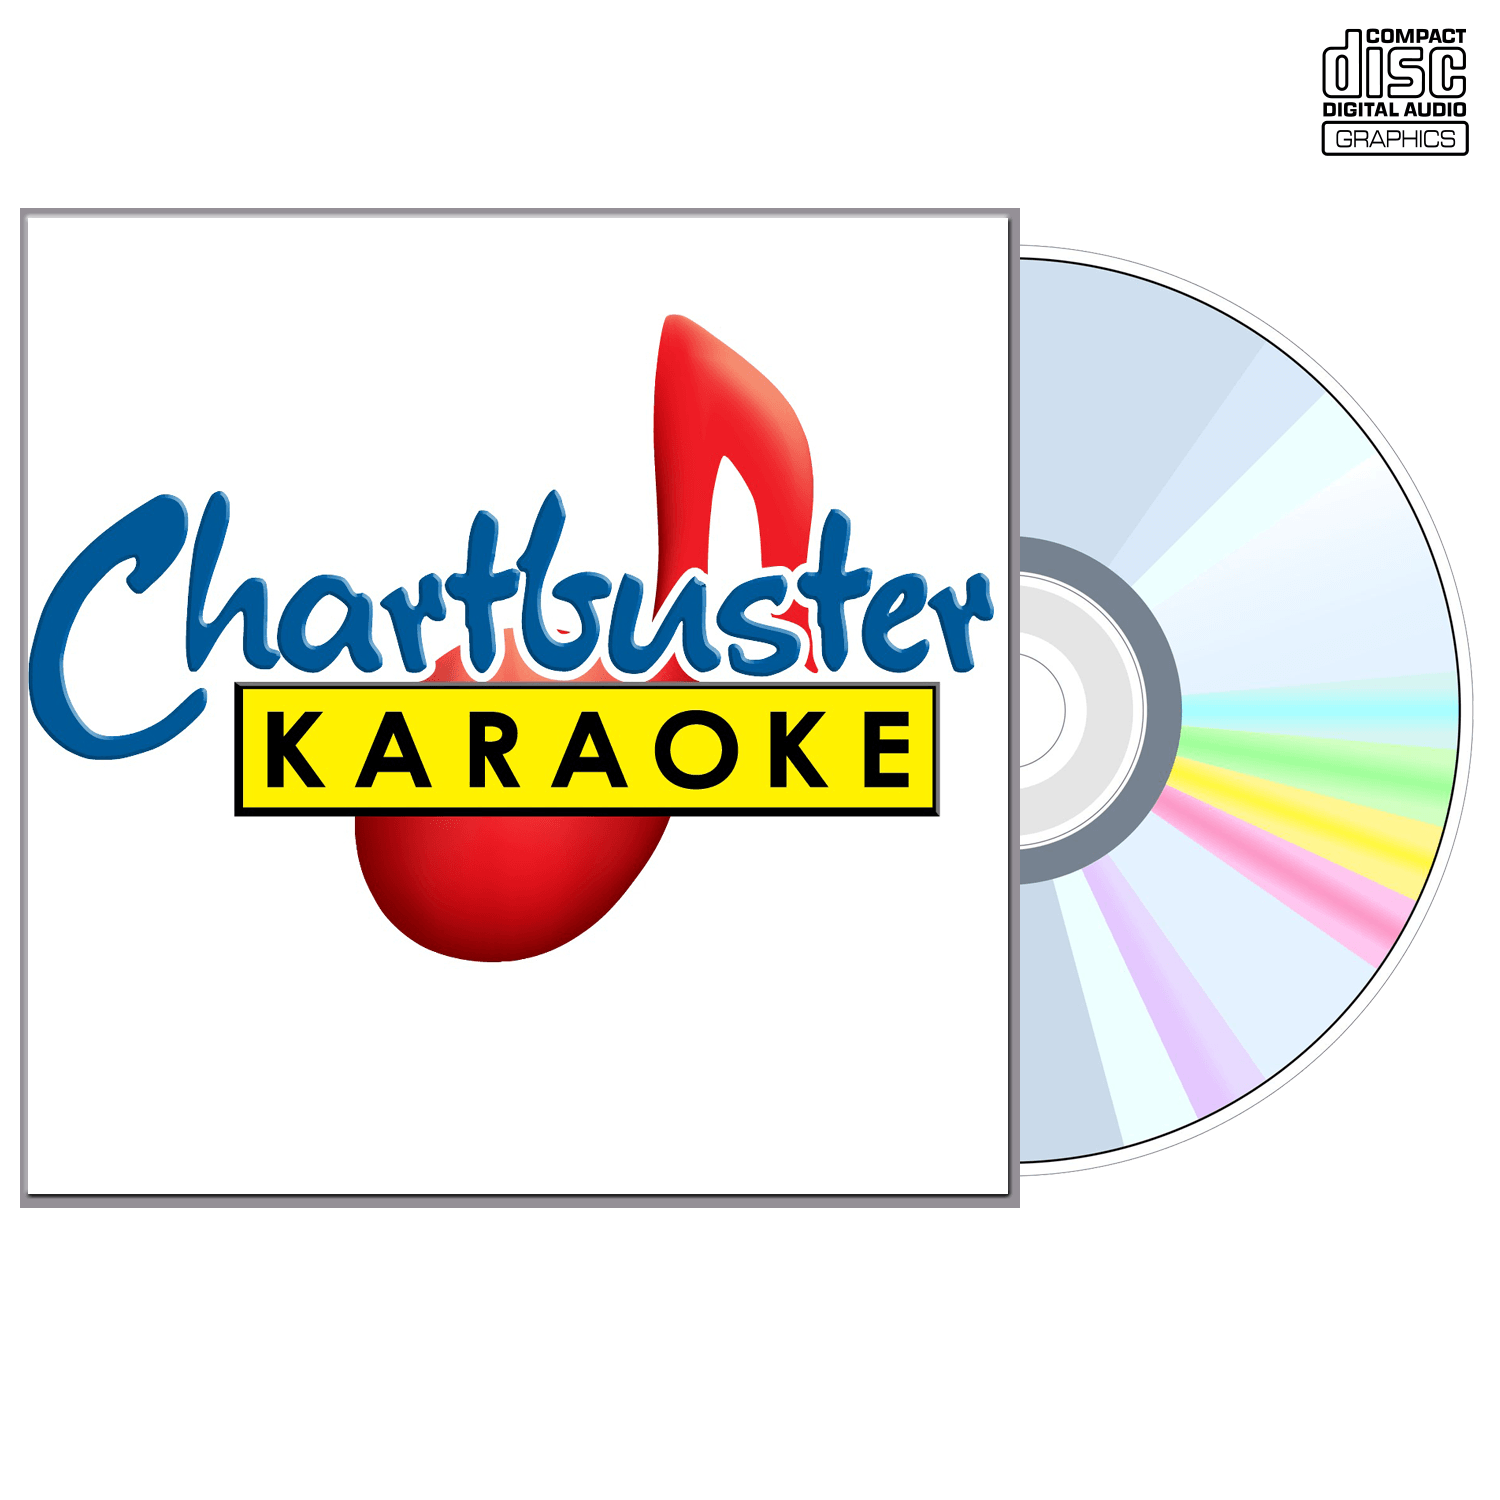 The Temptations - CD+G - Chartbuster Karaoke - Karaoke Home Entertainment